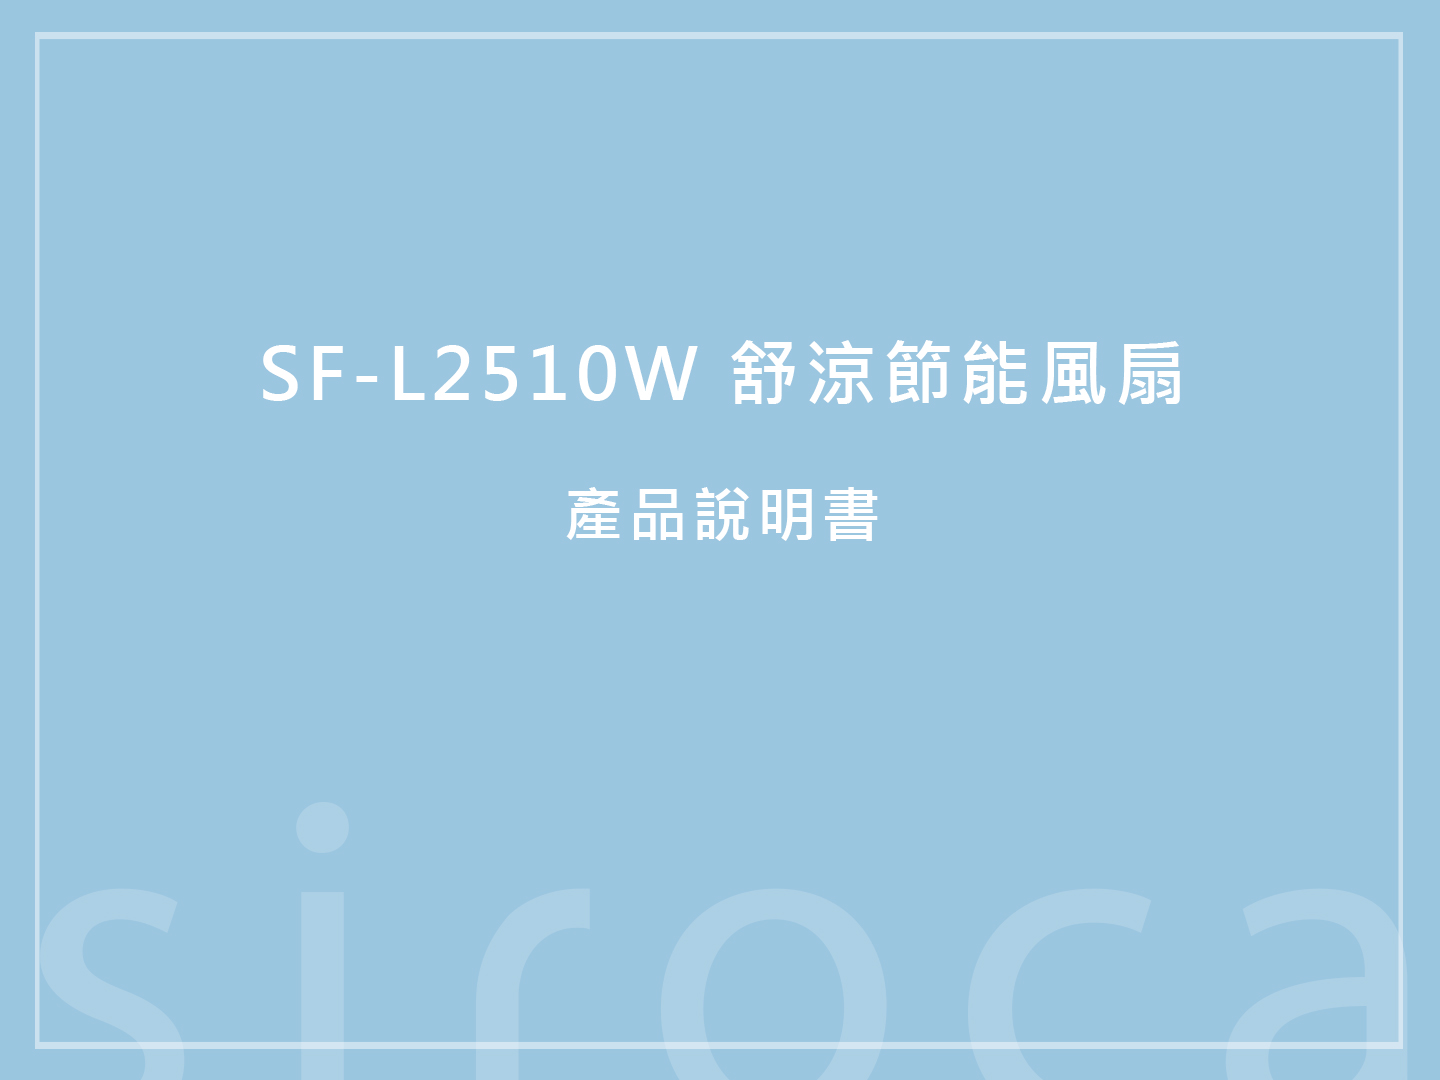 【產品說明書】SF-L2510W 舒涼節能風扇 說明書下載